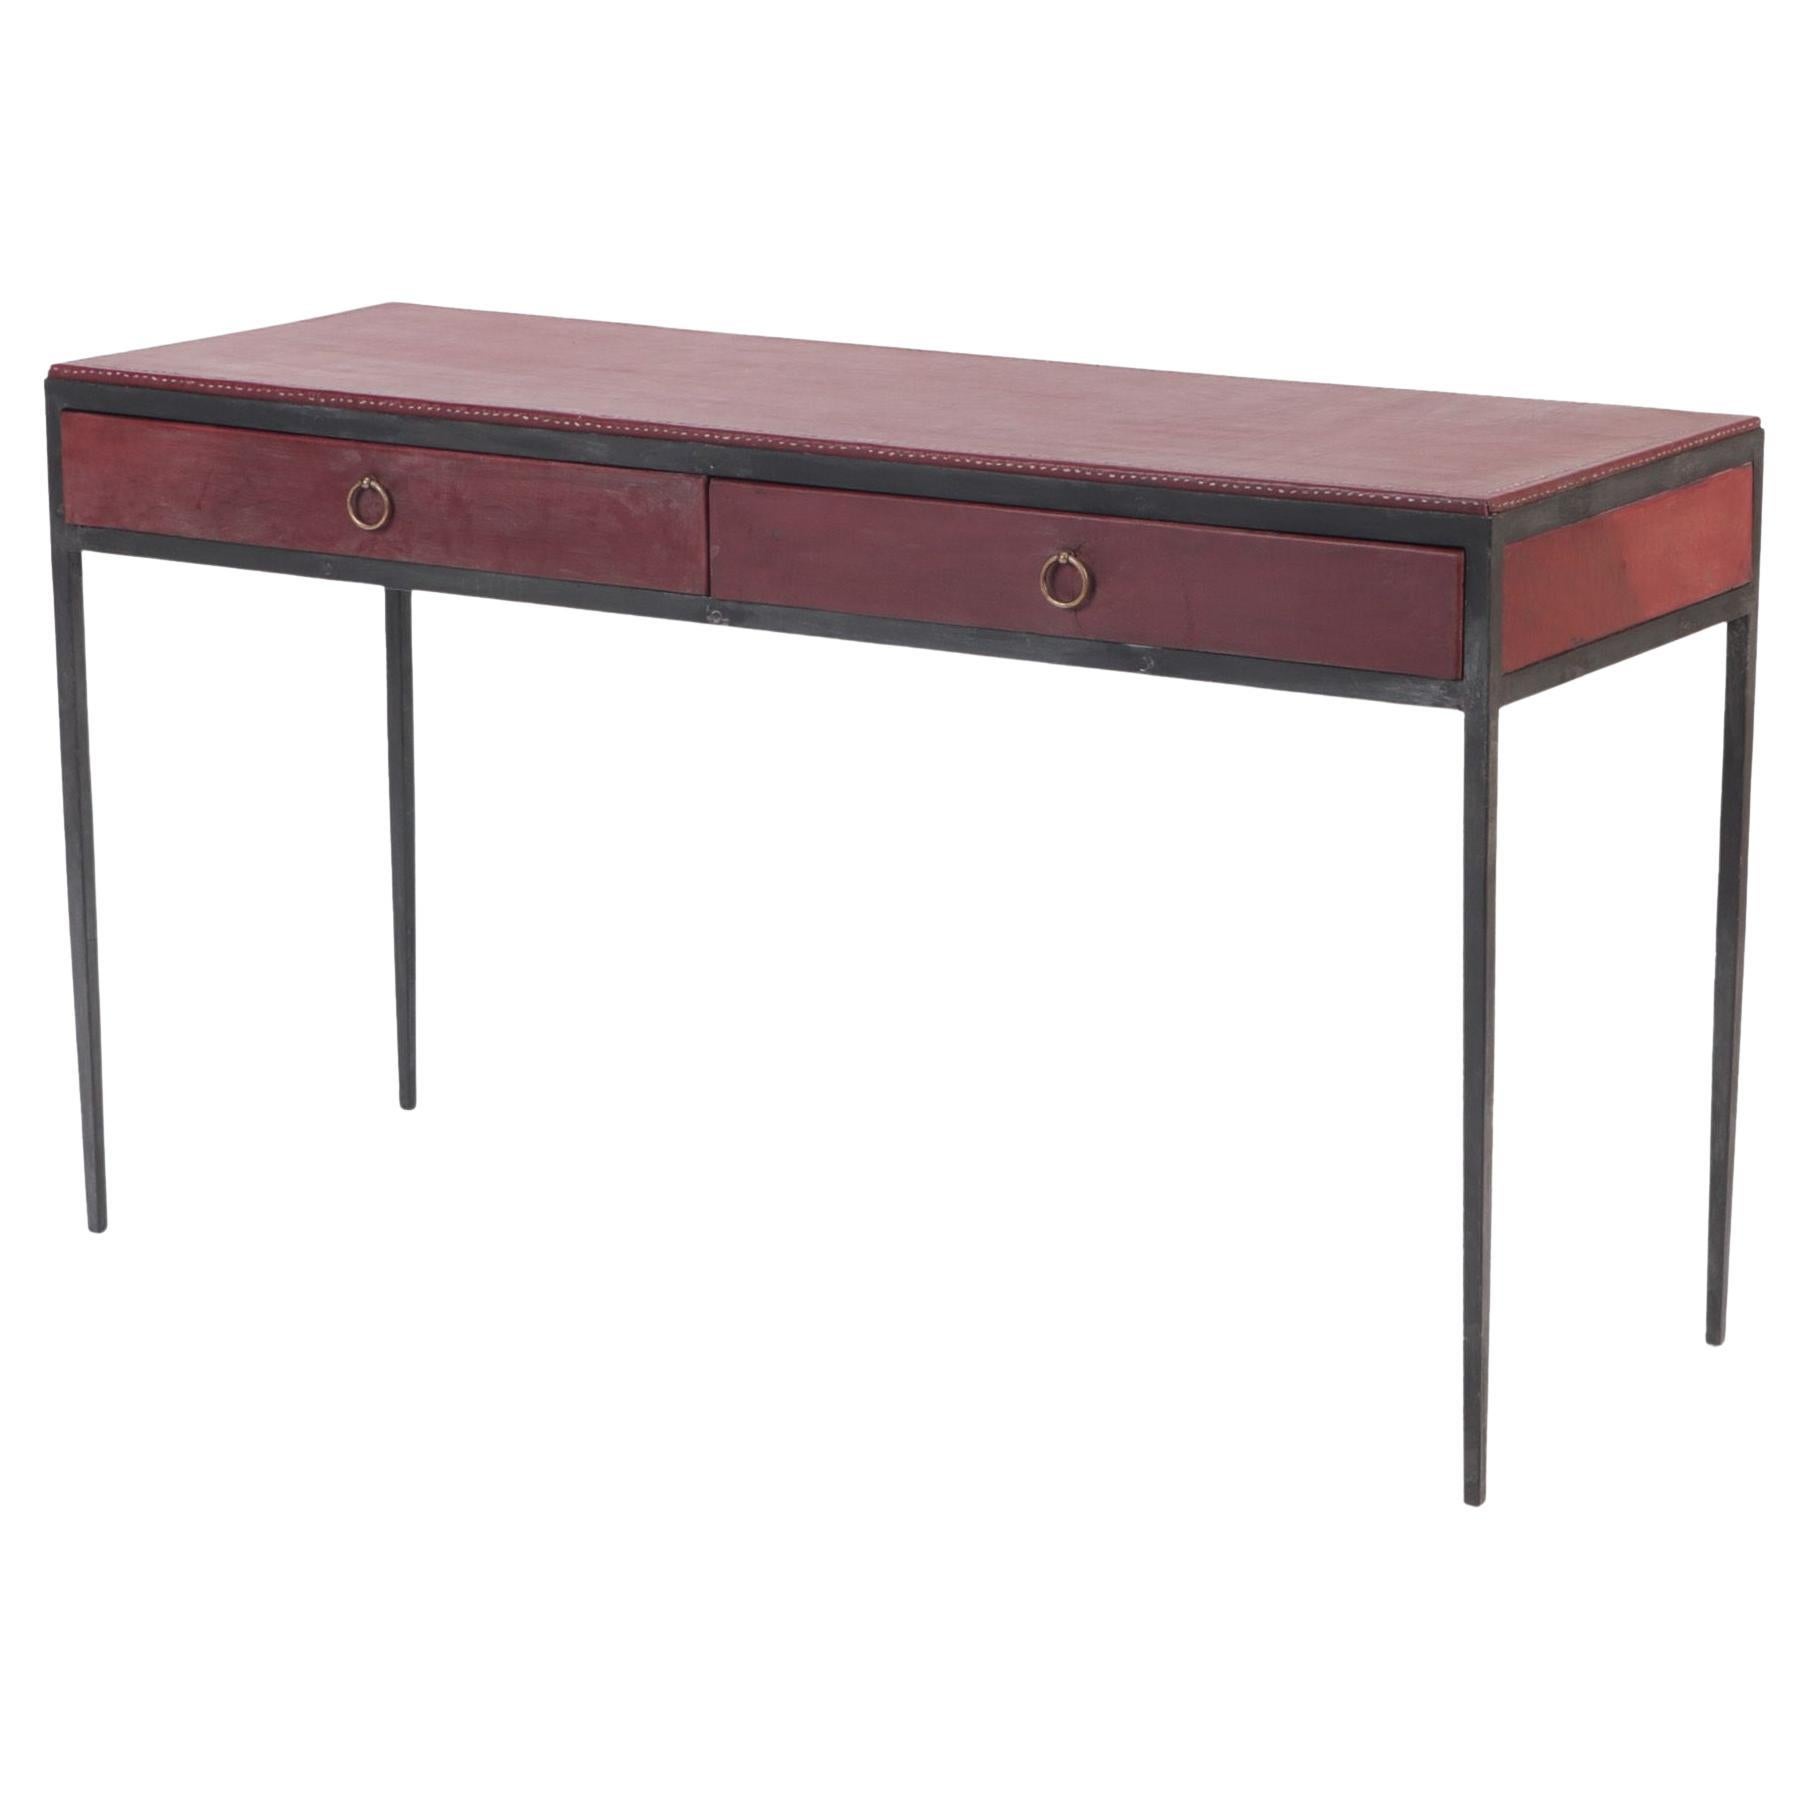 Schreibtisch aus Eisen und burgunderrotem Leder, zeitgenössisch